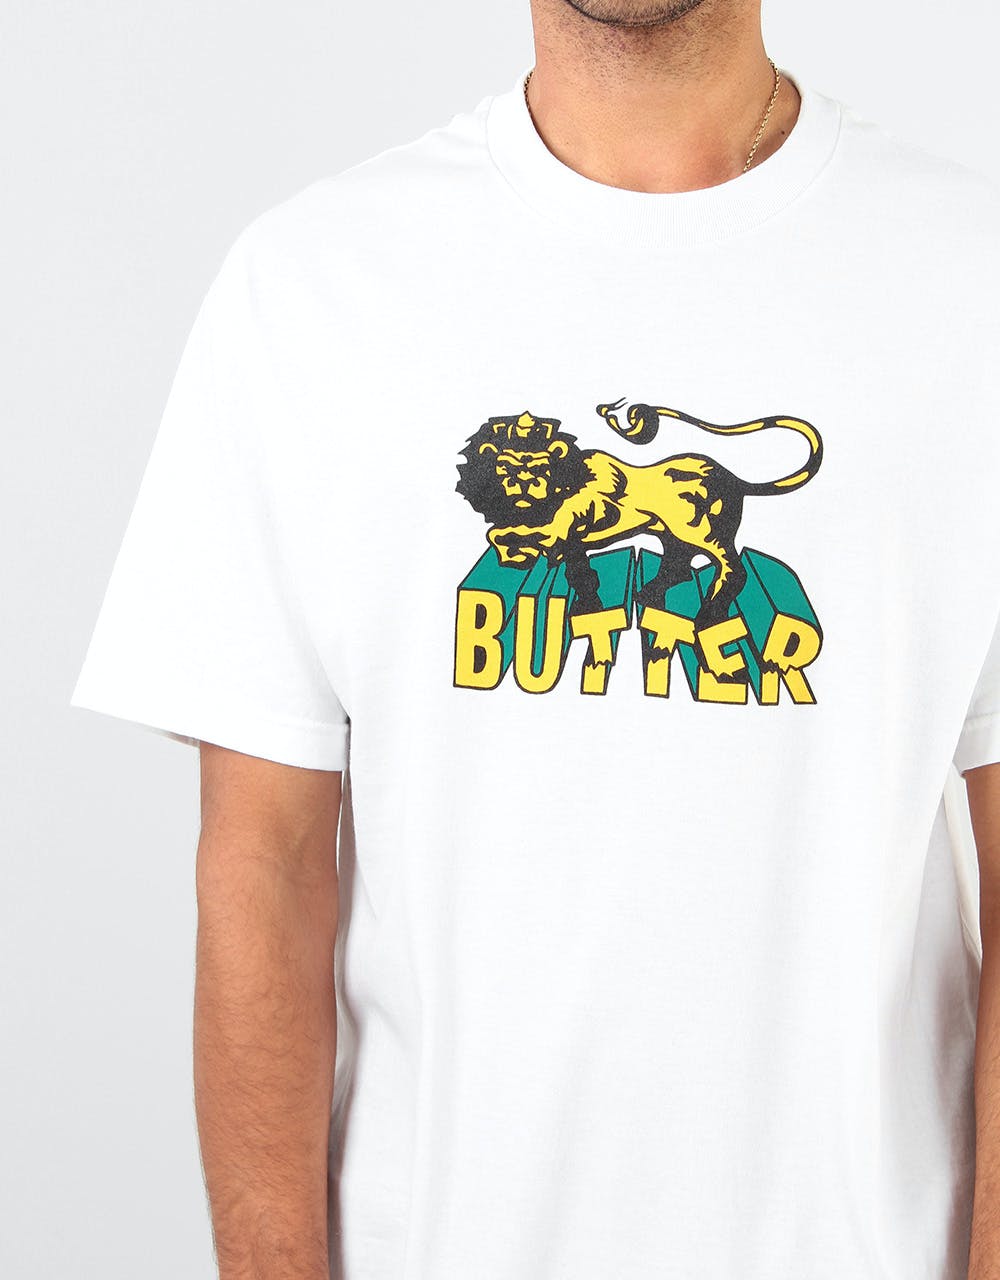 Butter Goods Jah T-Shirt - White